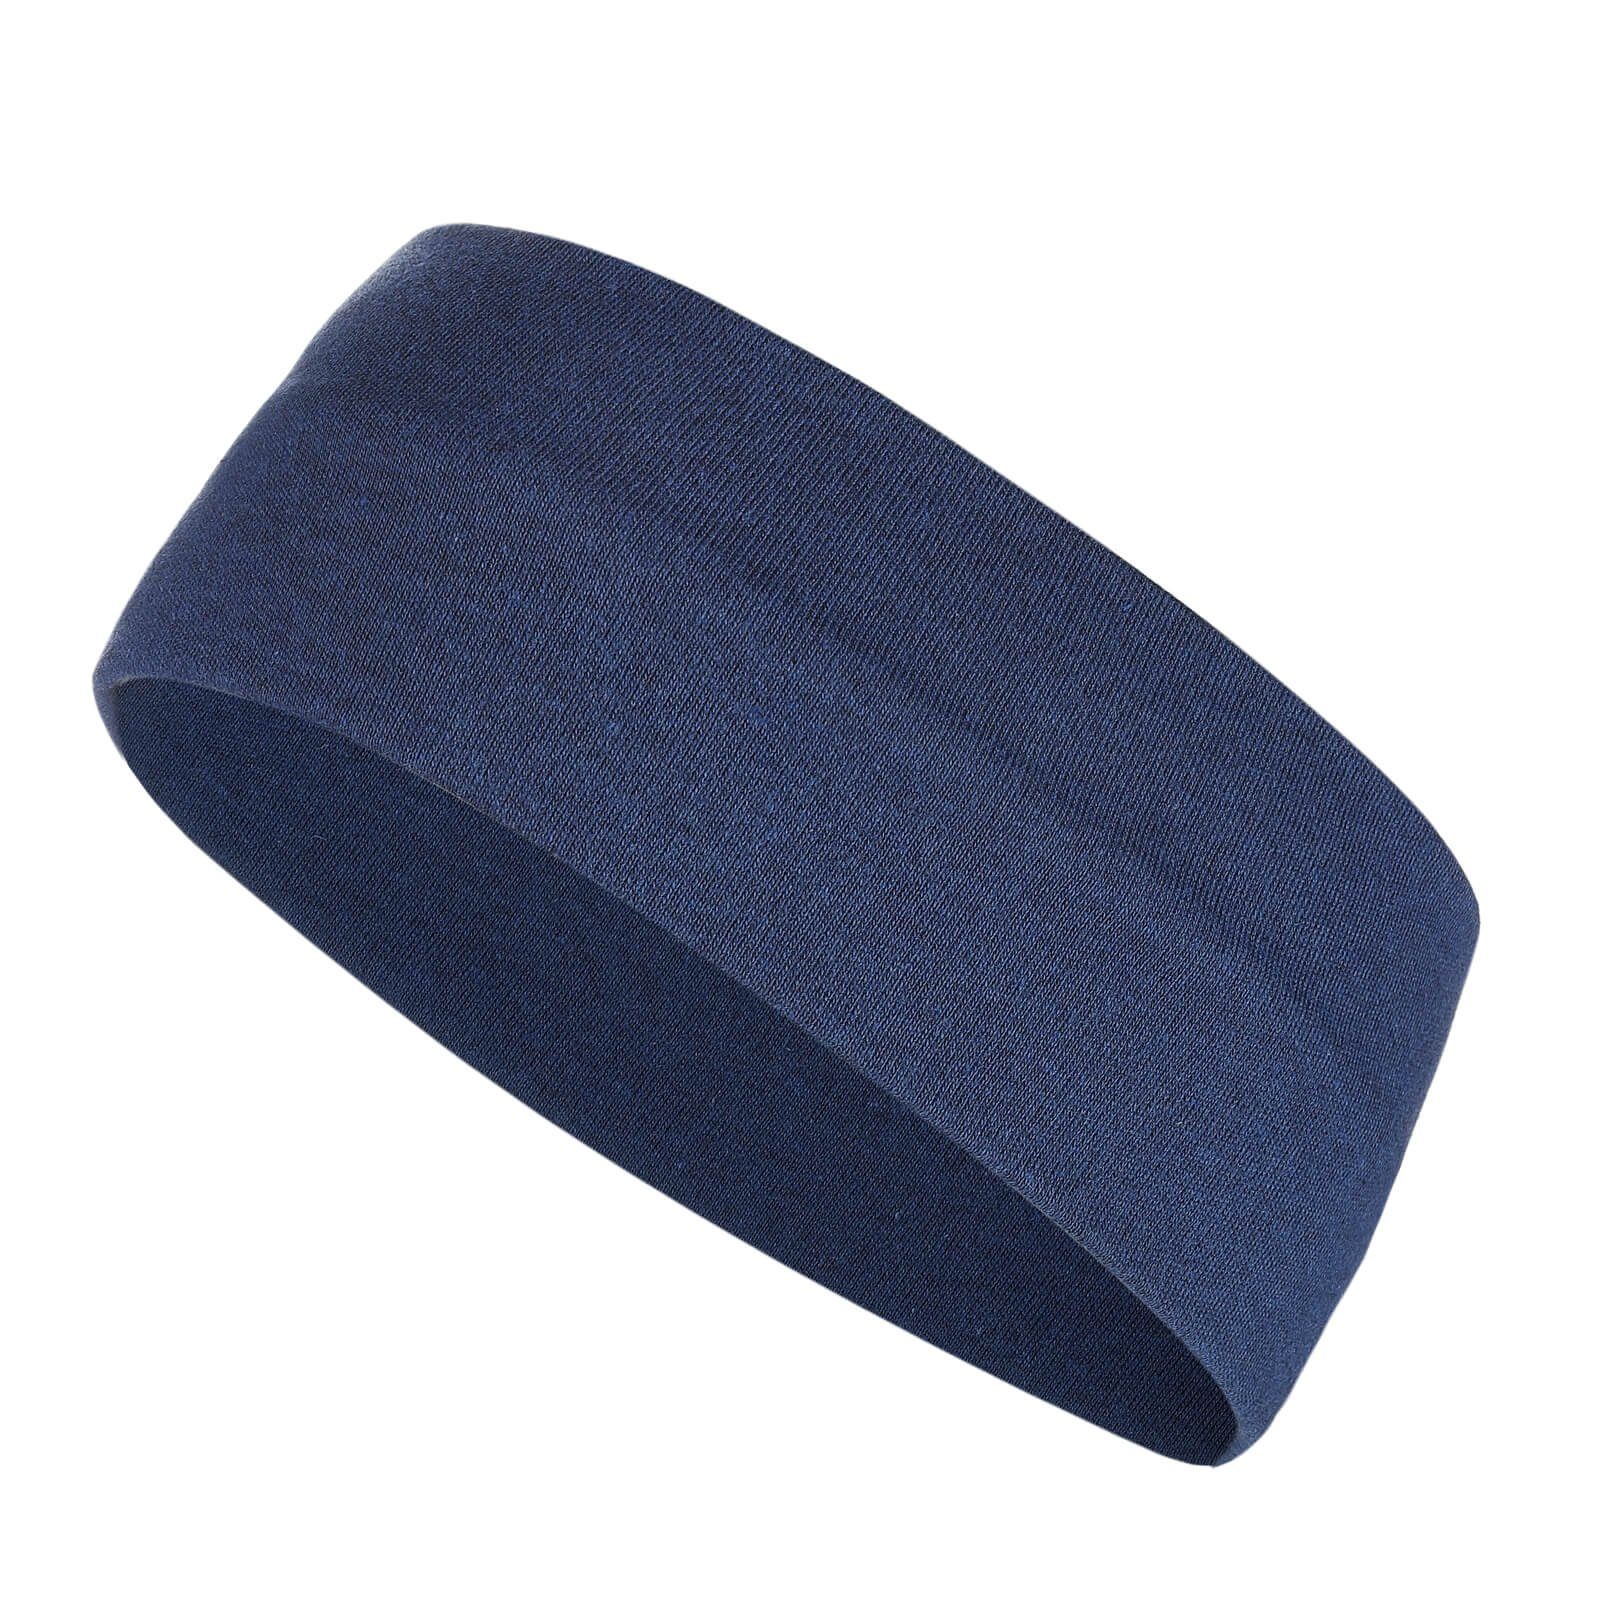 modAS Stirnband Unisex Kopfband Maritim für Kinder und Erwachsene zweilagig Baumwolle (84) blaumelange